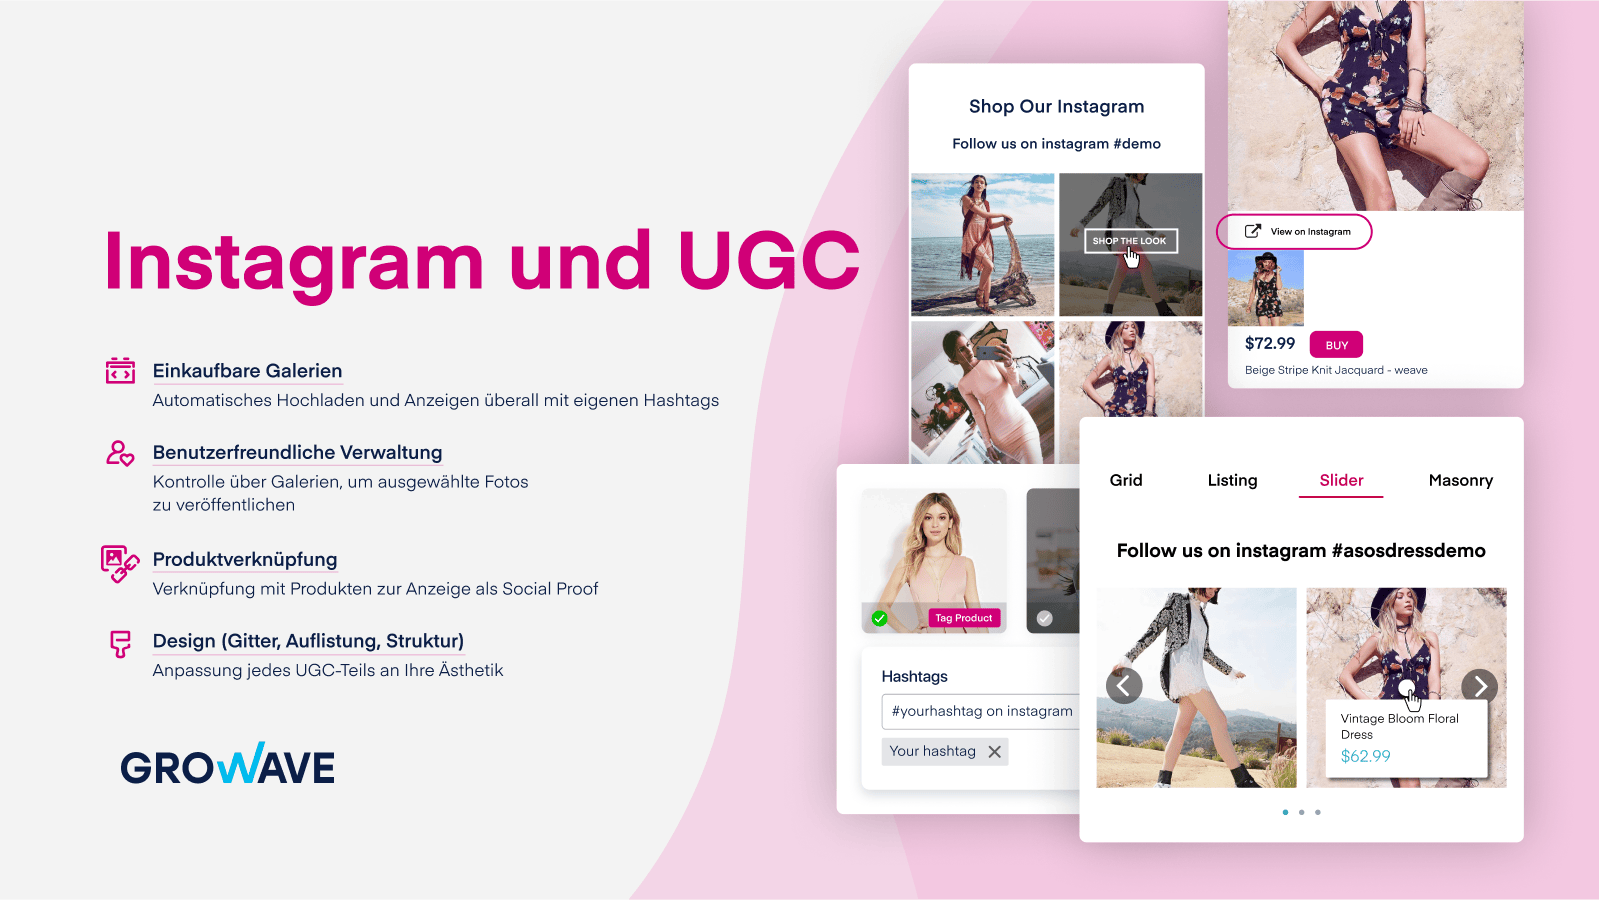 Instagram und UGC